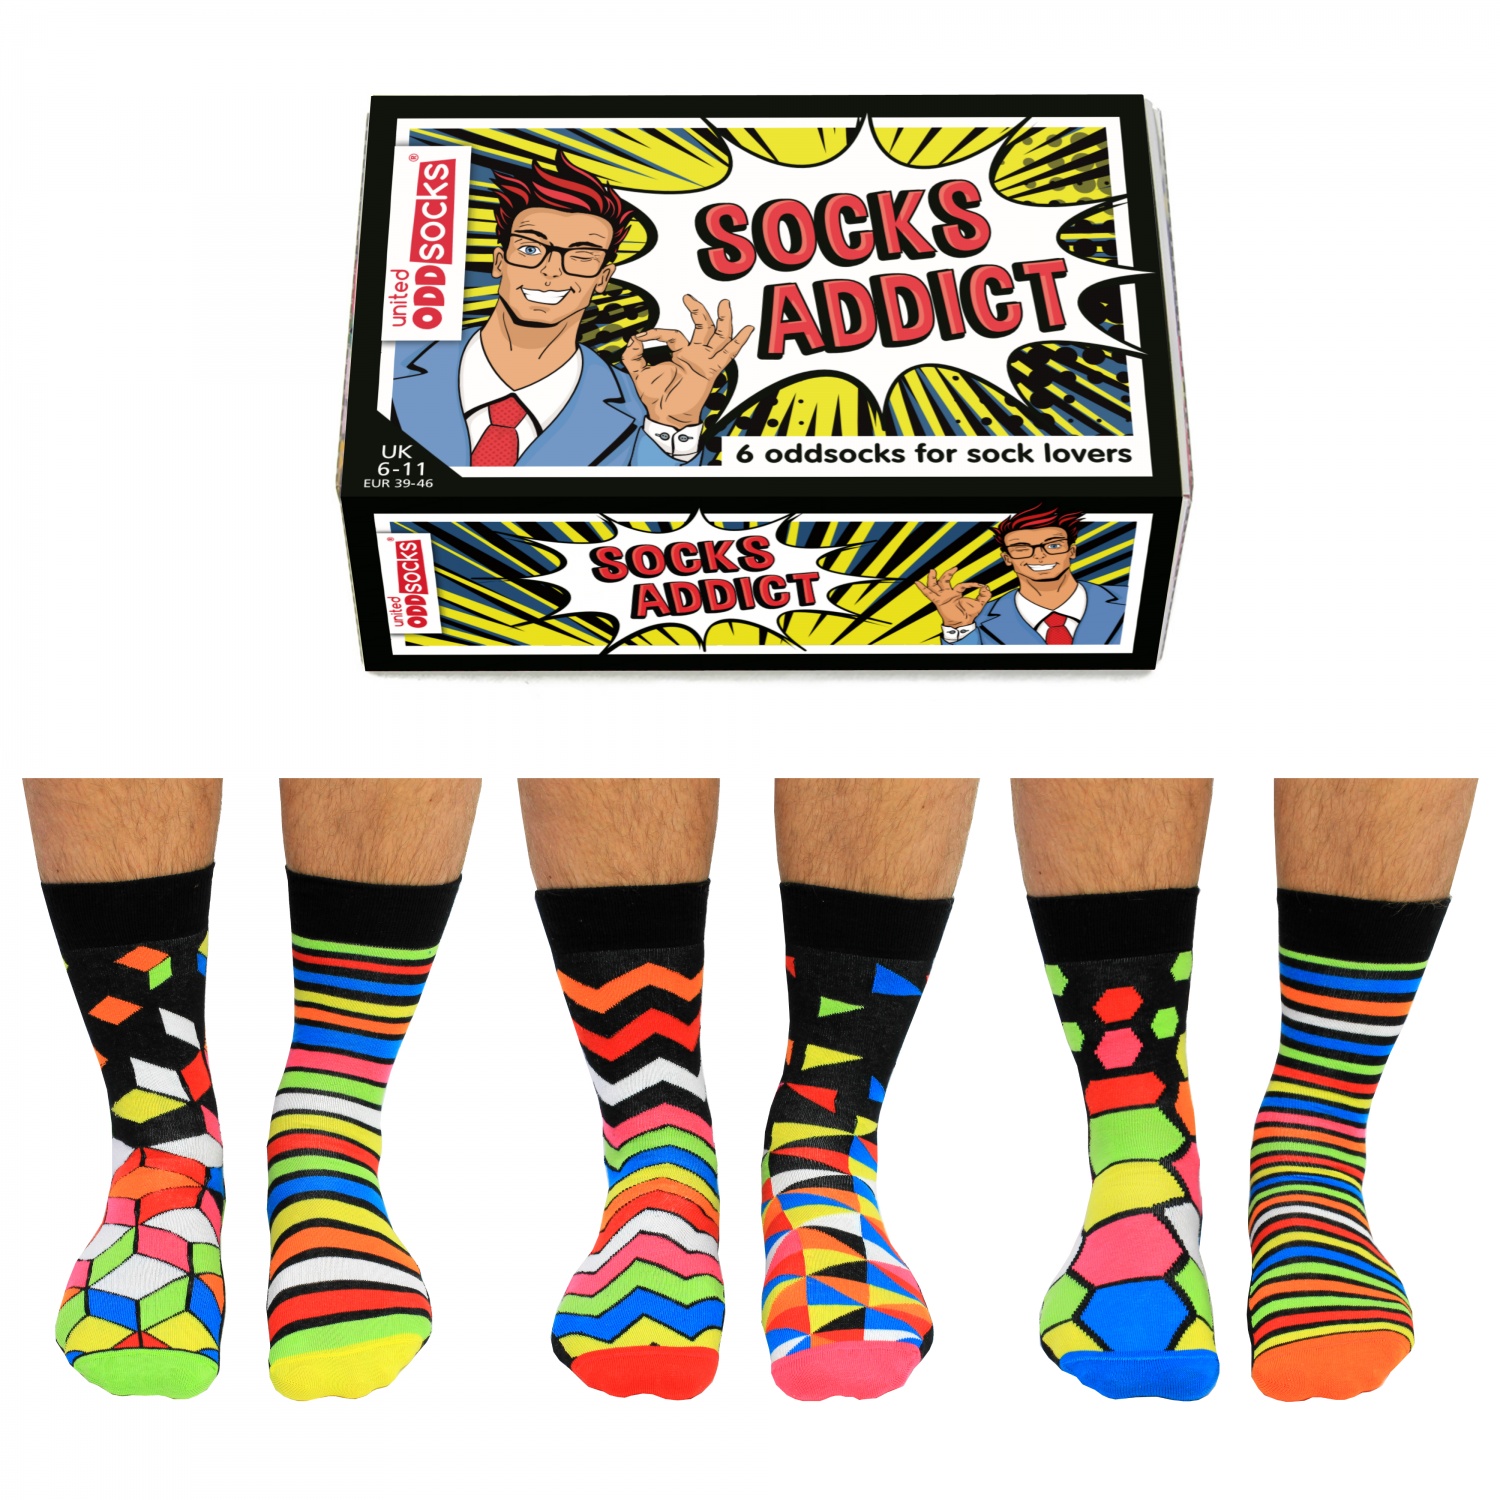 United Oddsocks - Socks Addict Novelty Mens Socks 6-11